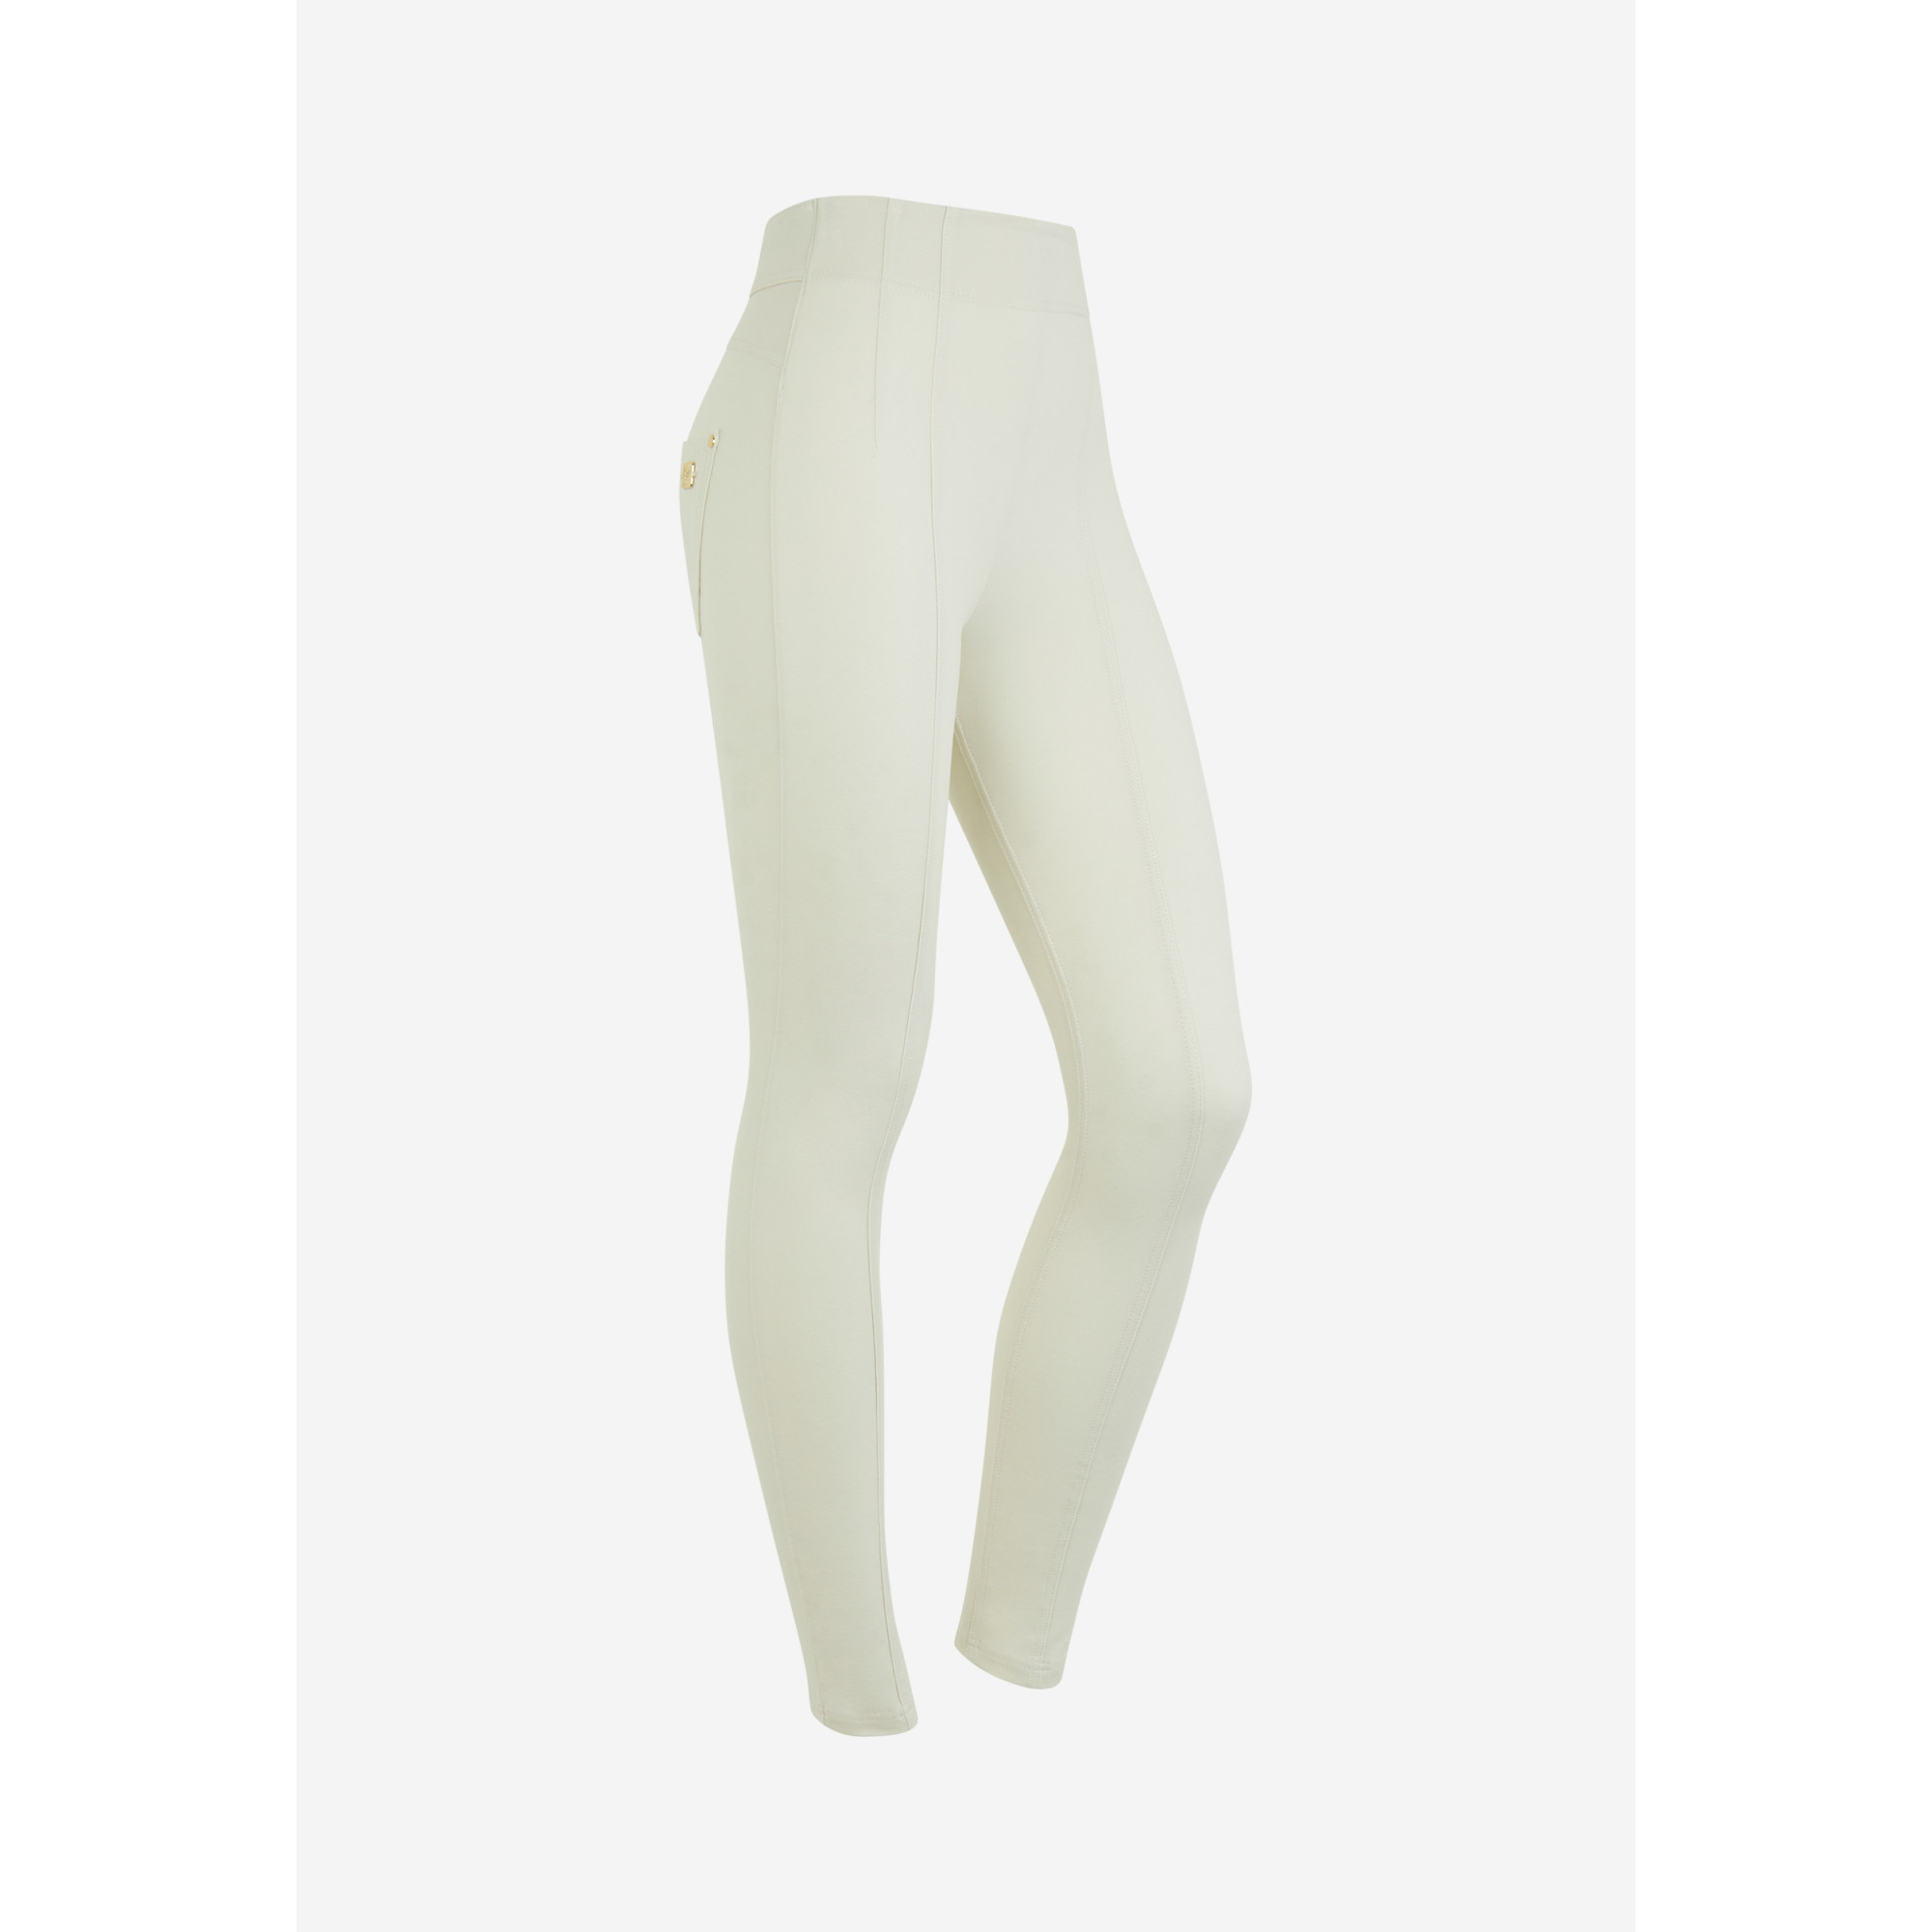 Freddy N.O.W.® Yoga Eco Damen Comfort Hose - Super High Waist Skinny - Mit Nähten auf den Beinen - Lily White